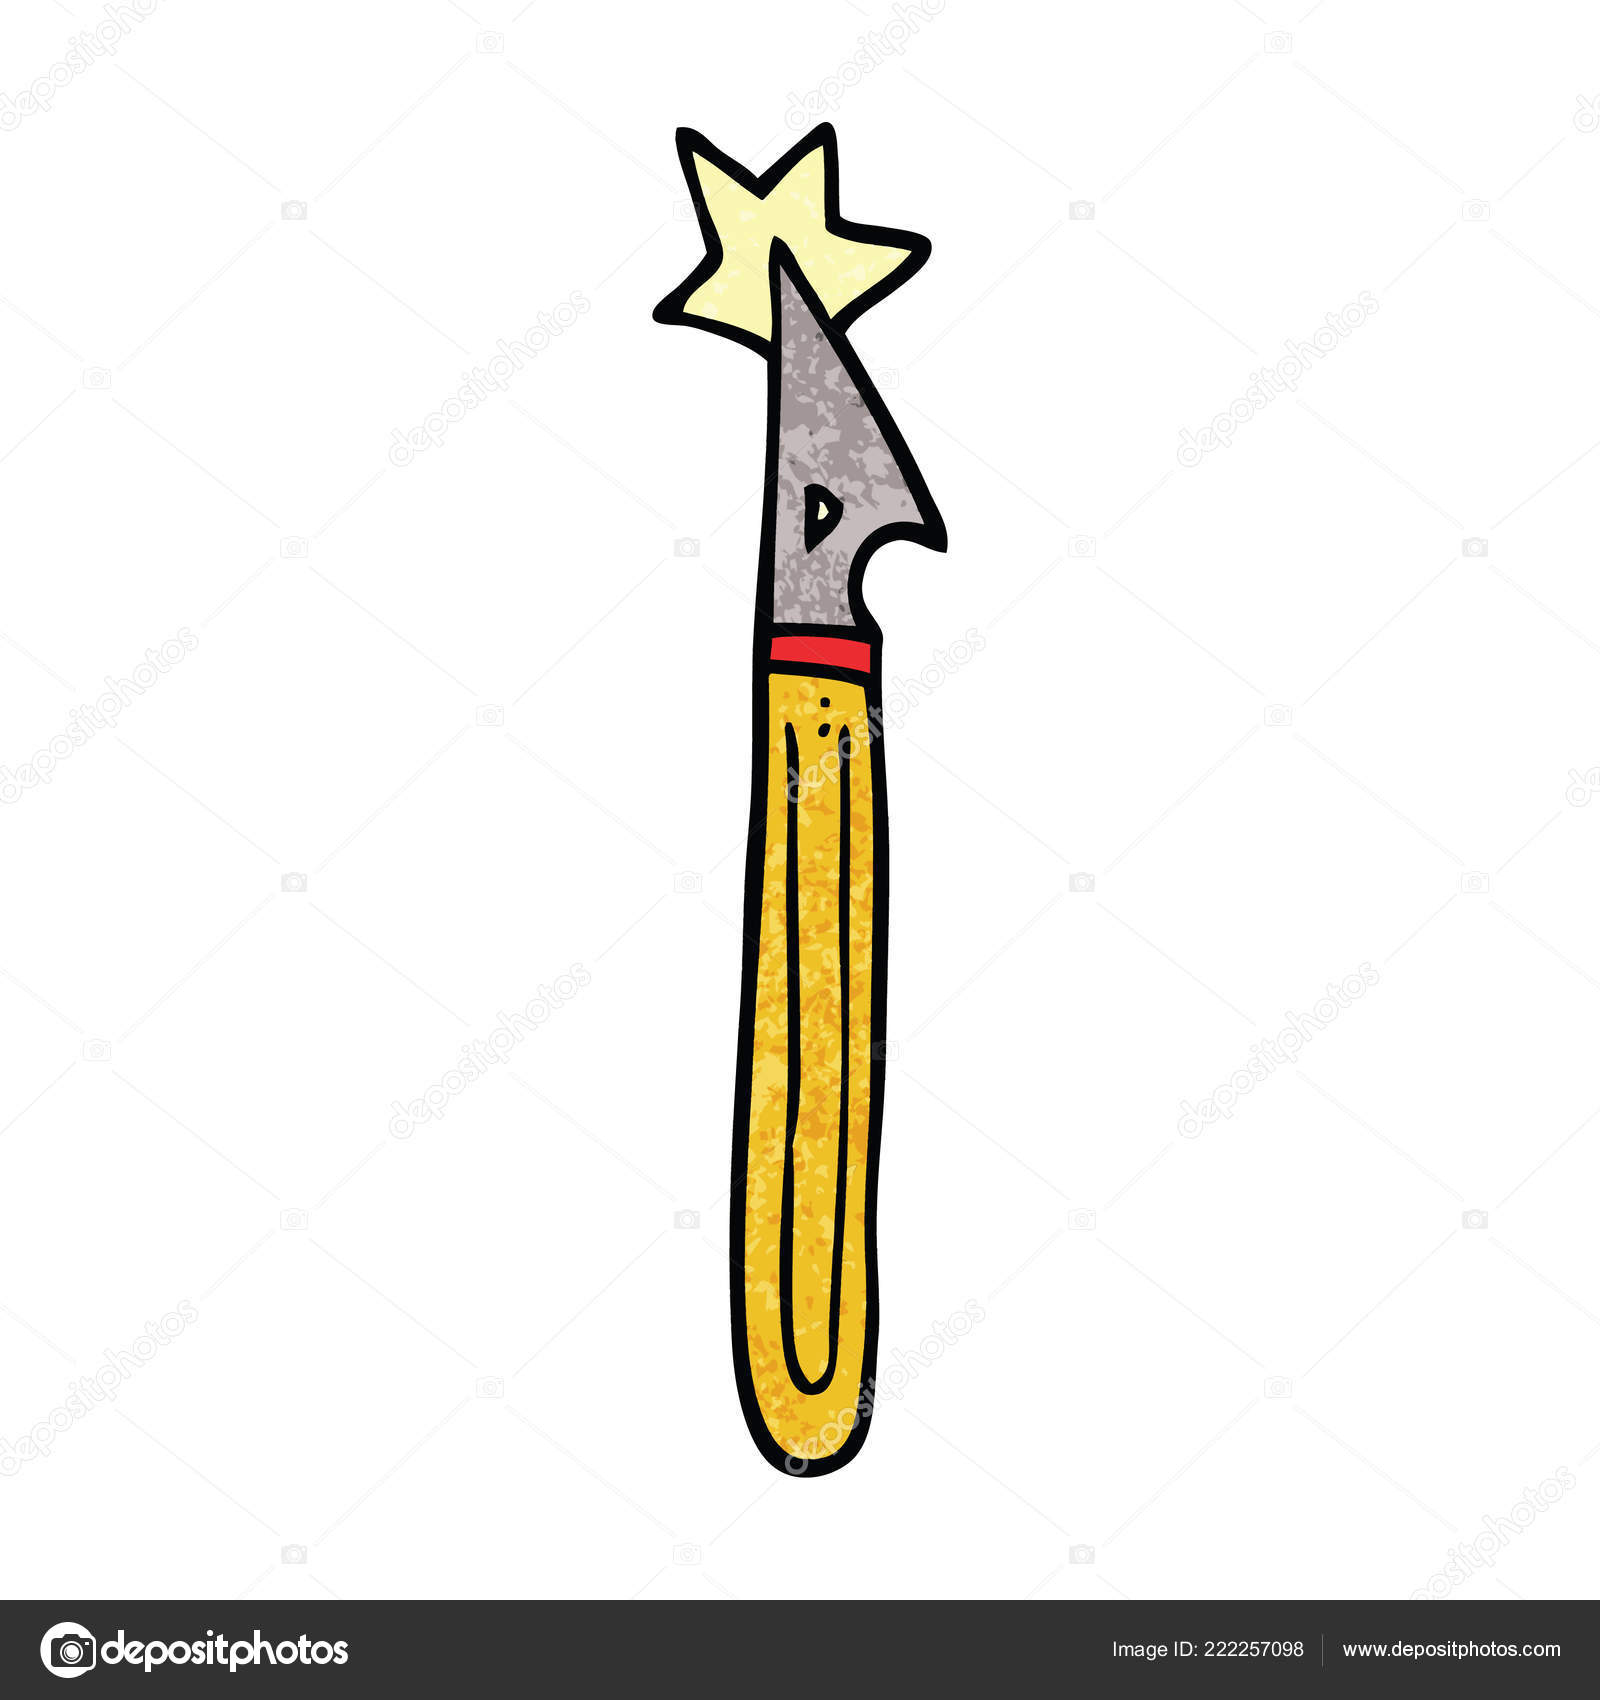  Dessin  Anim  Doodle Couteau Artisanal image vectorielle 